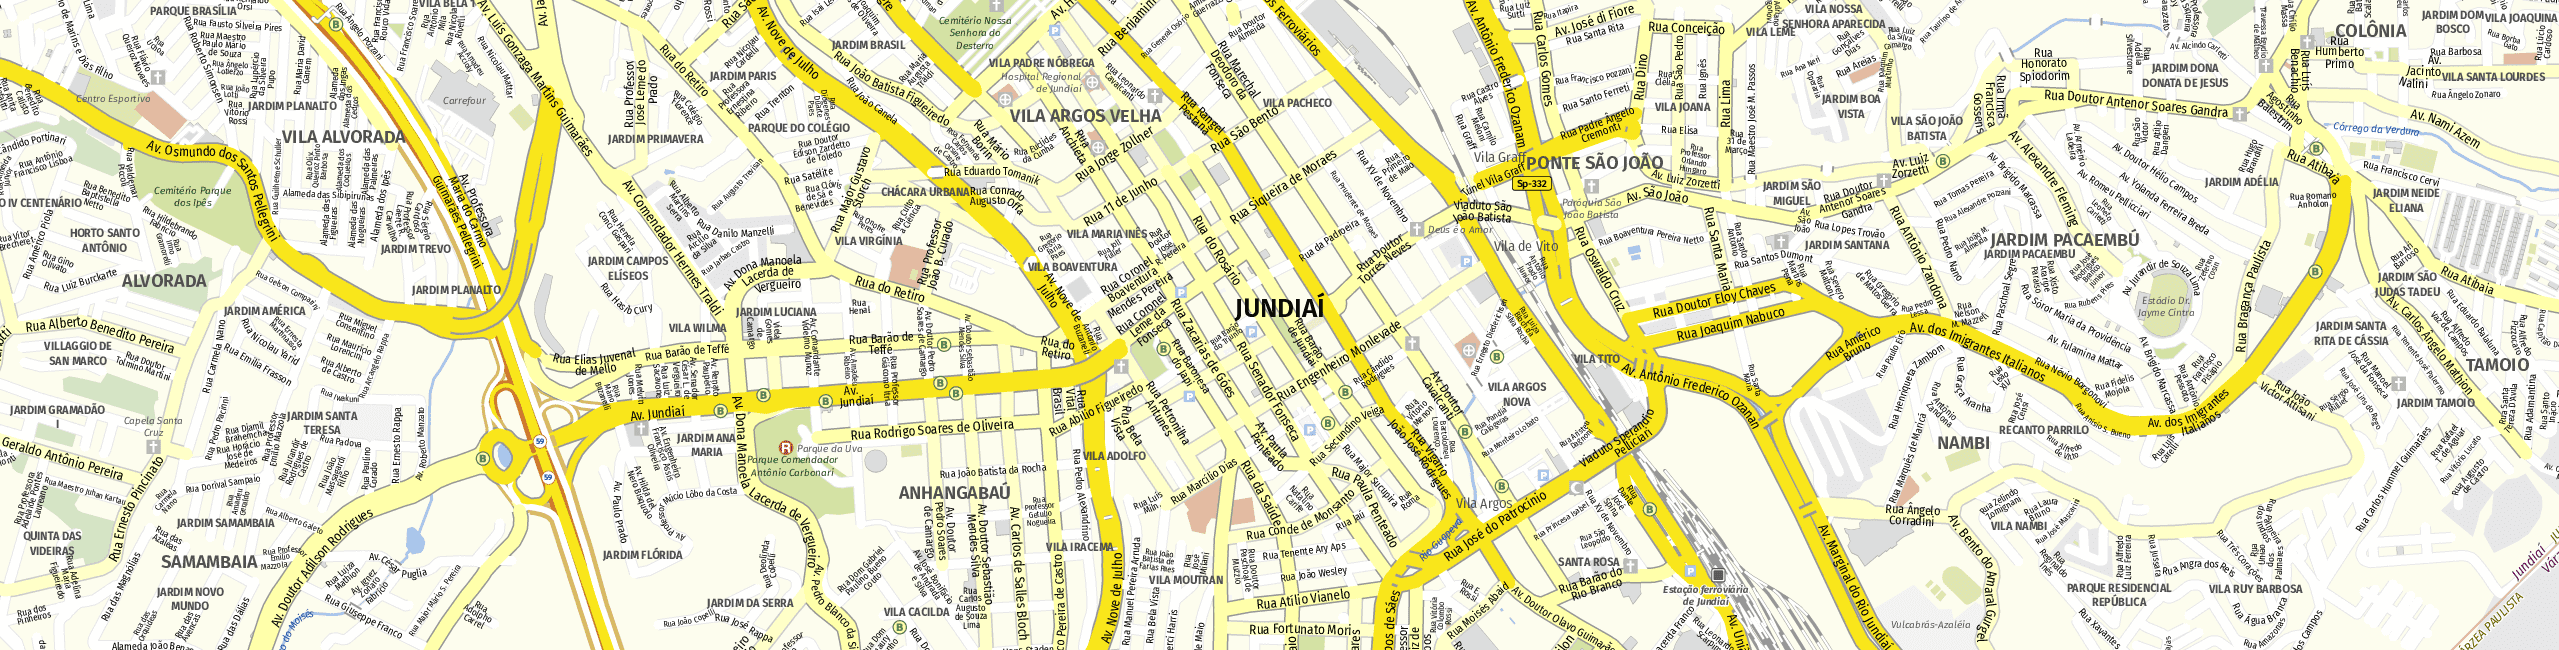 Stadtplan Jundiaí zum Downloaden.